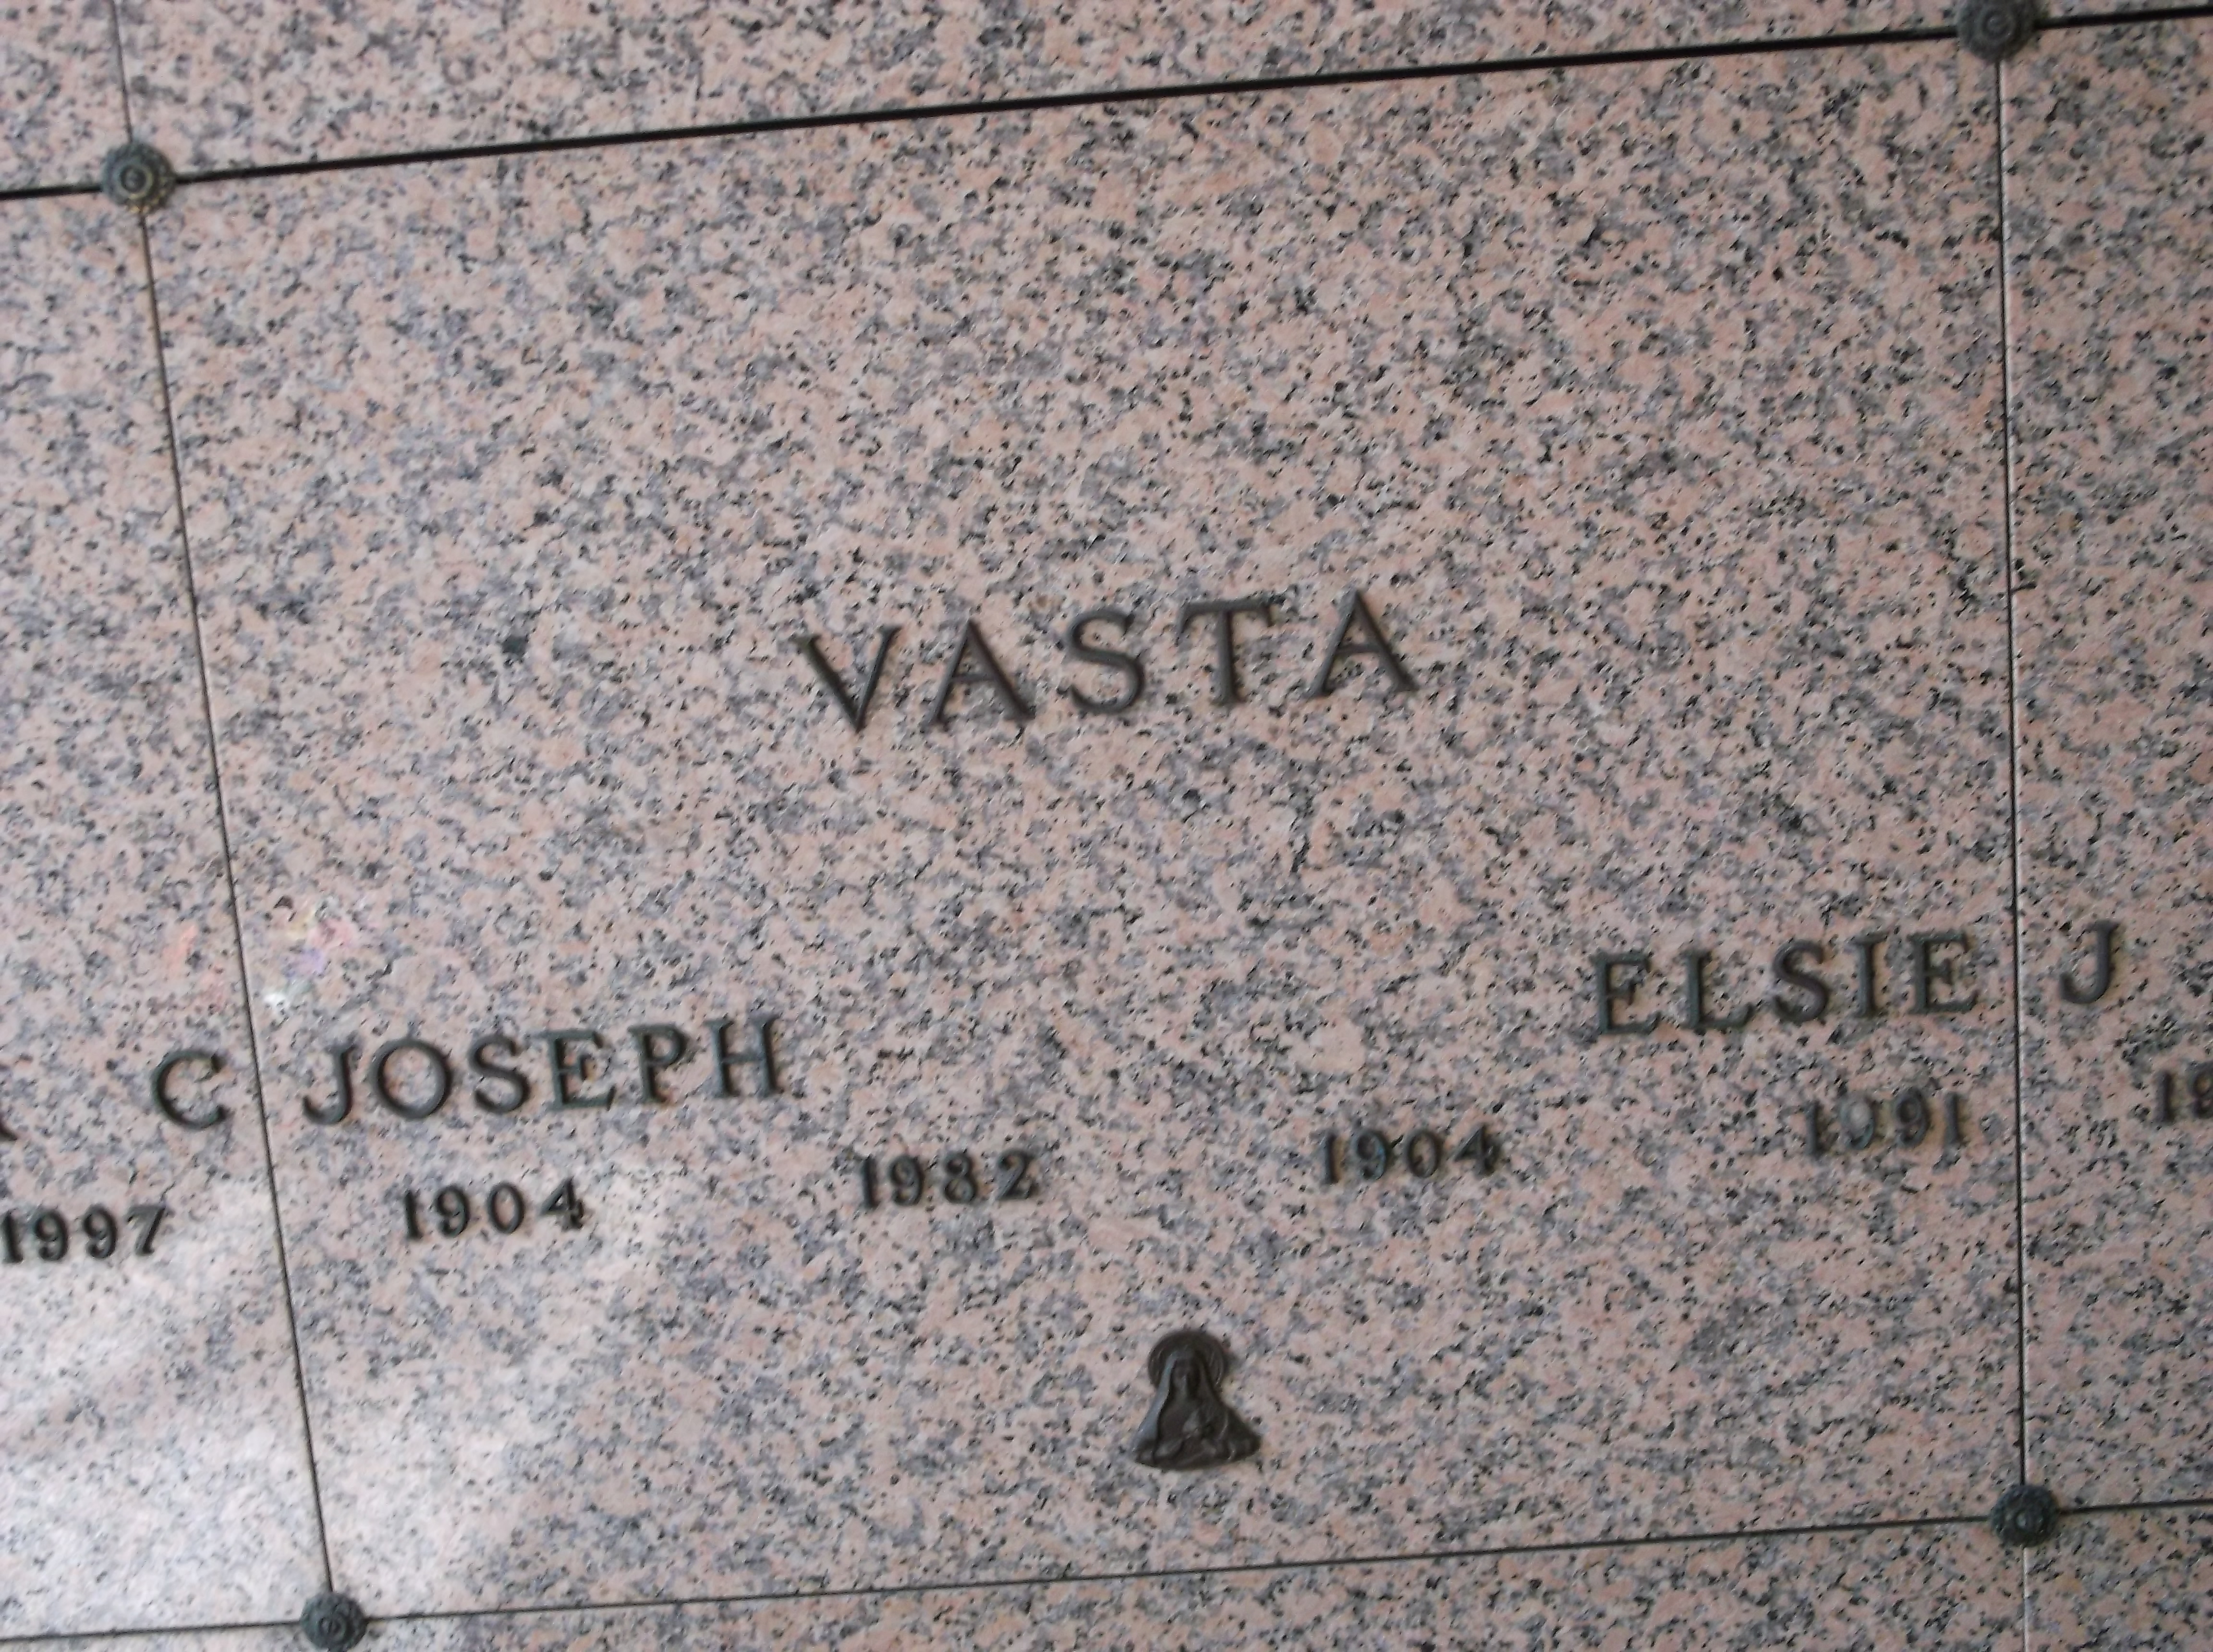 Joseph Vasta